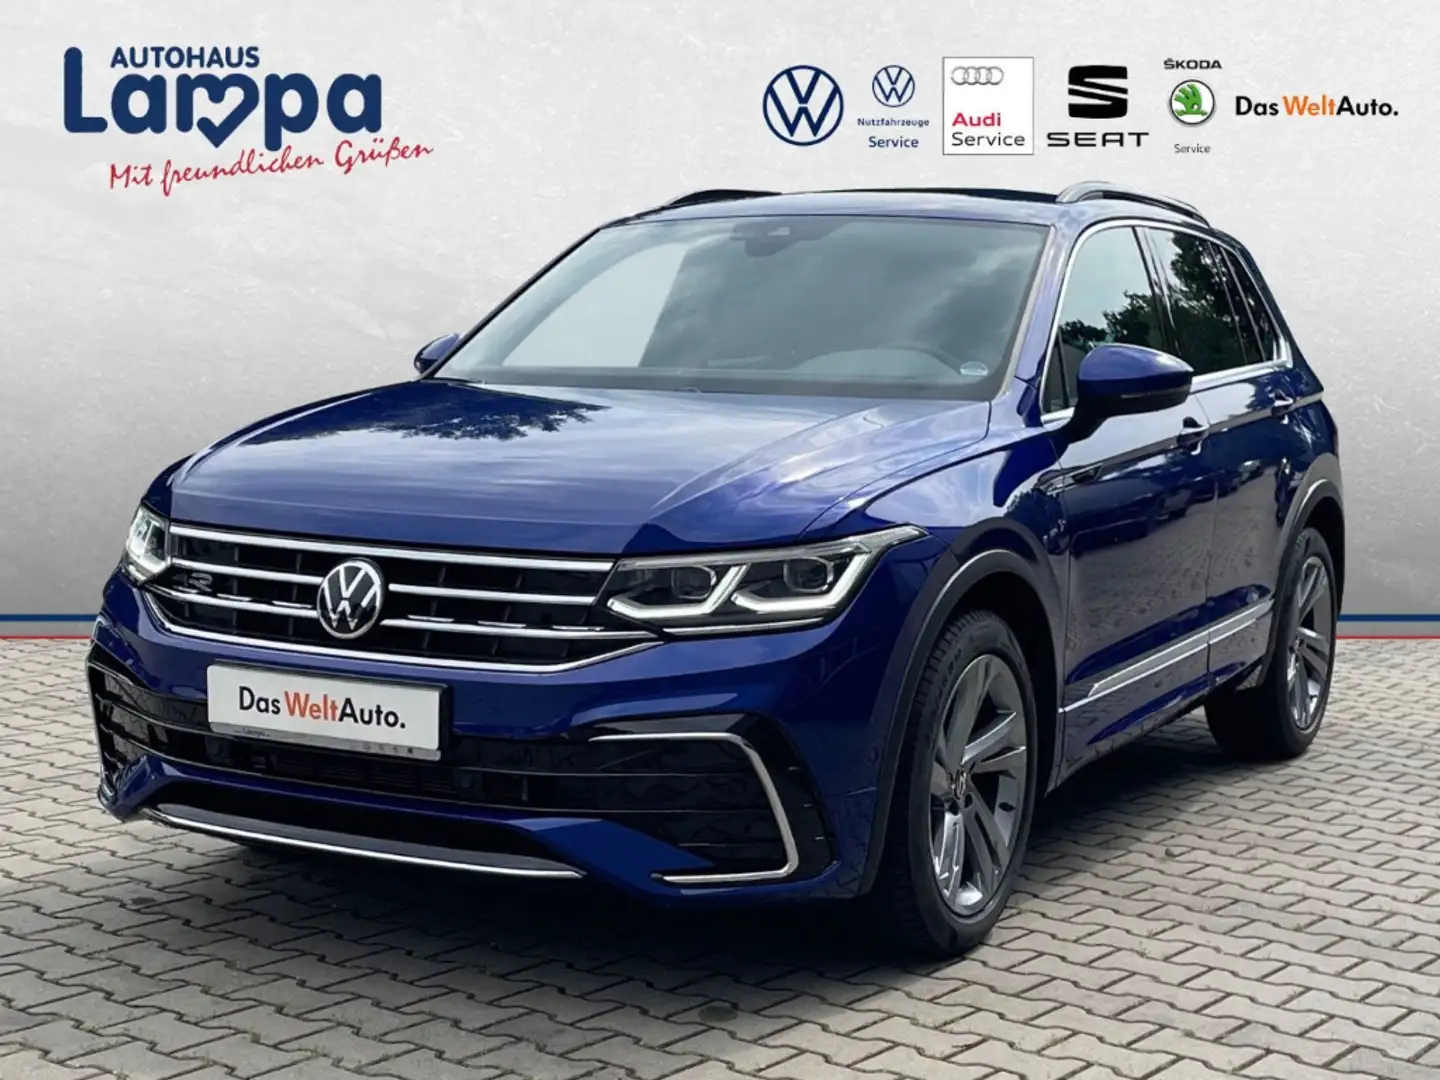 Volkswagen Tiguan SUV/Geländewagen/Pickup in Blau gebraucht in